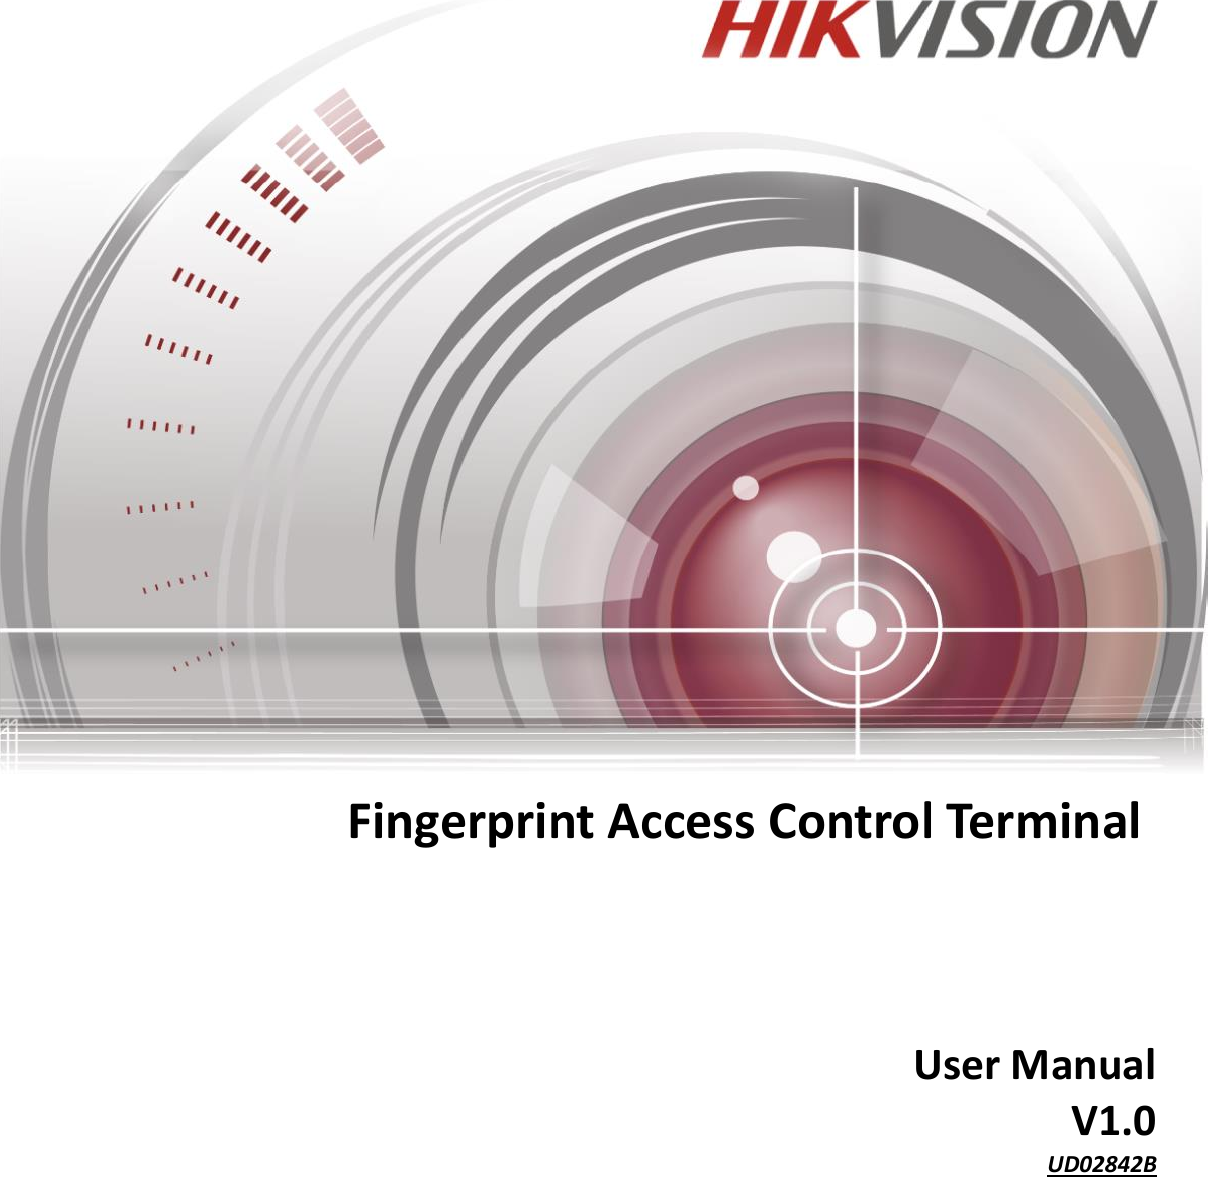                                Fingerprint Access Control Terminal       User Manual V1.0 UD02842B    